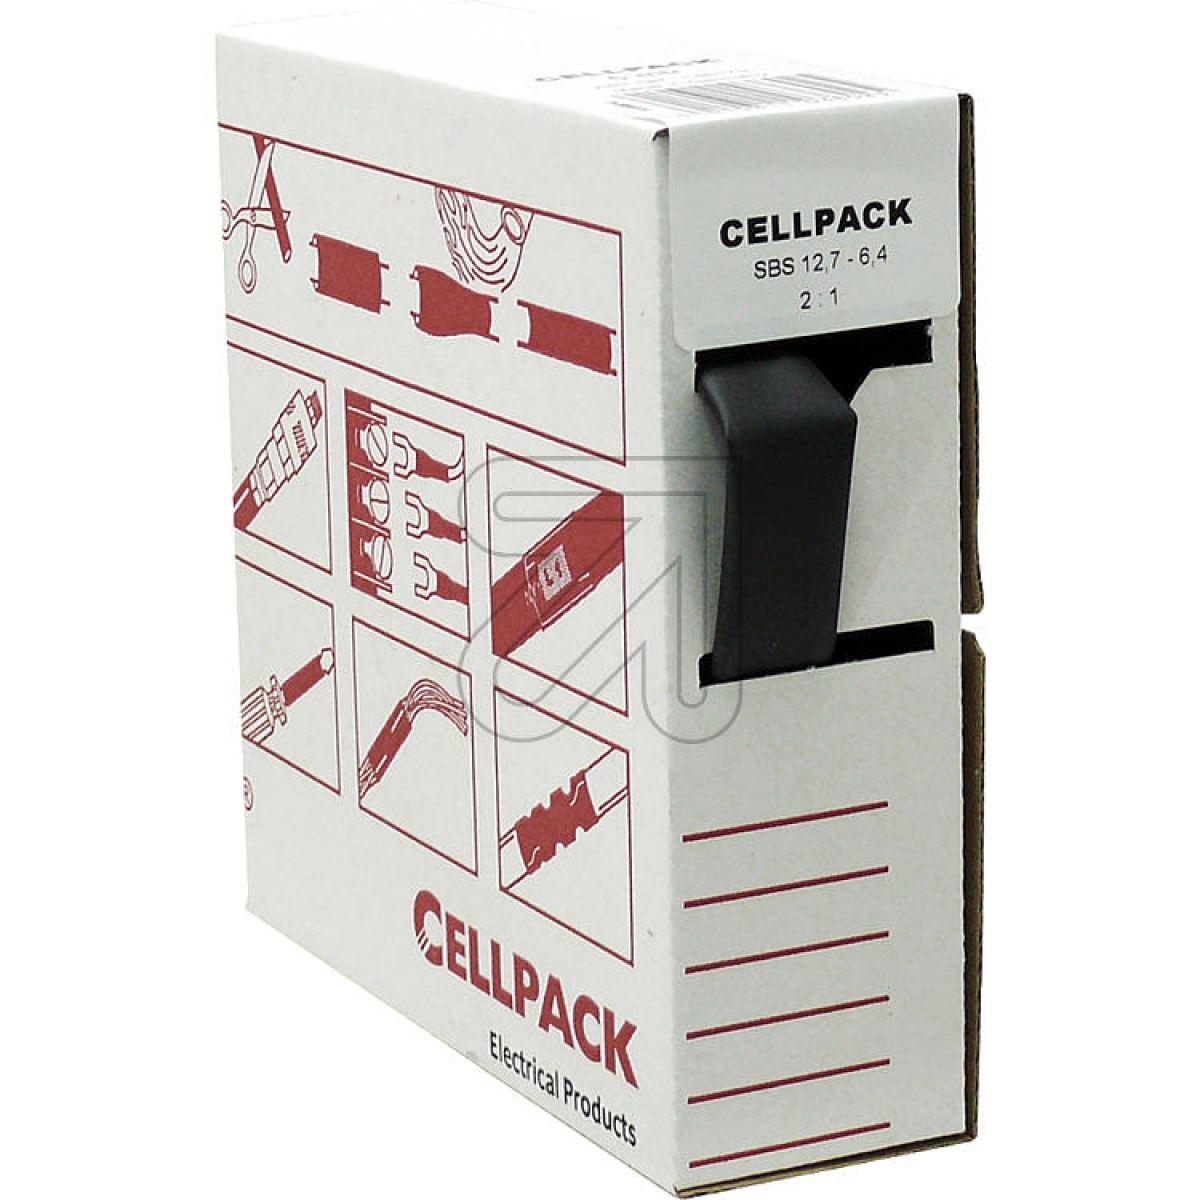 CellpackShrink tubing 12.7-6.4, content 5m